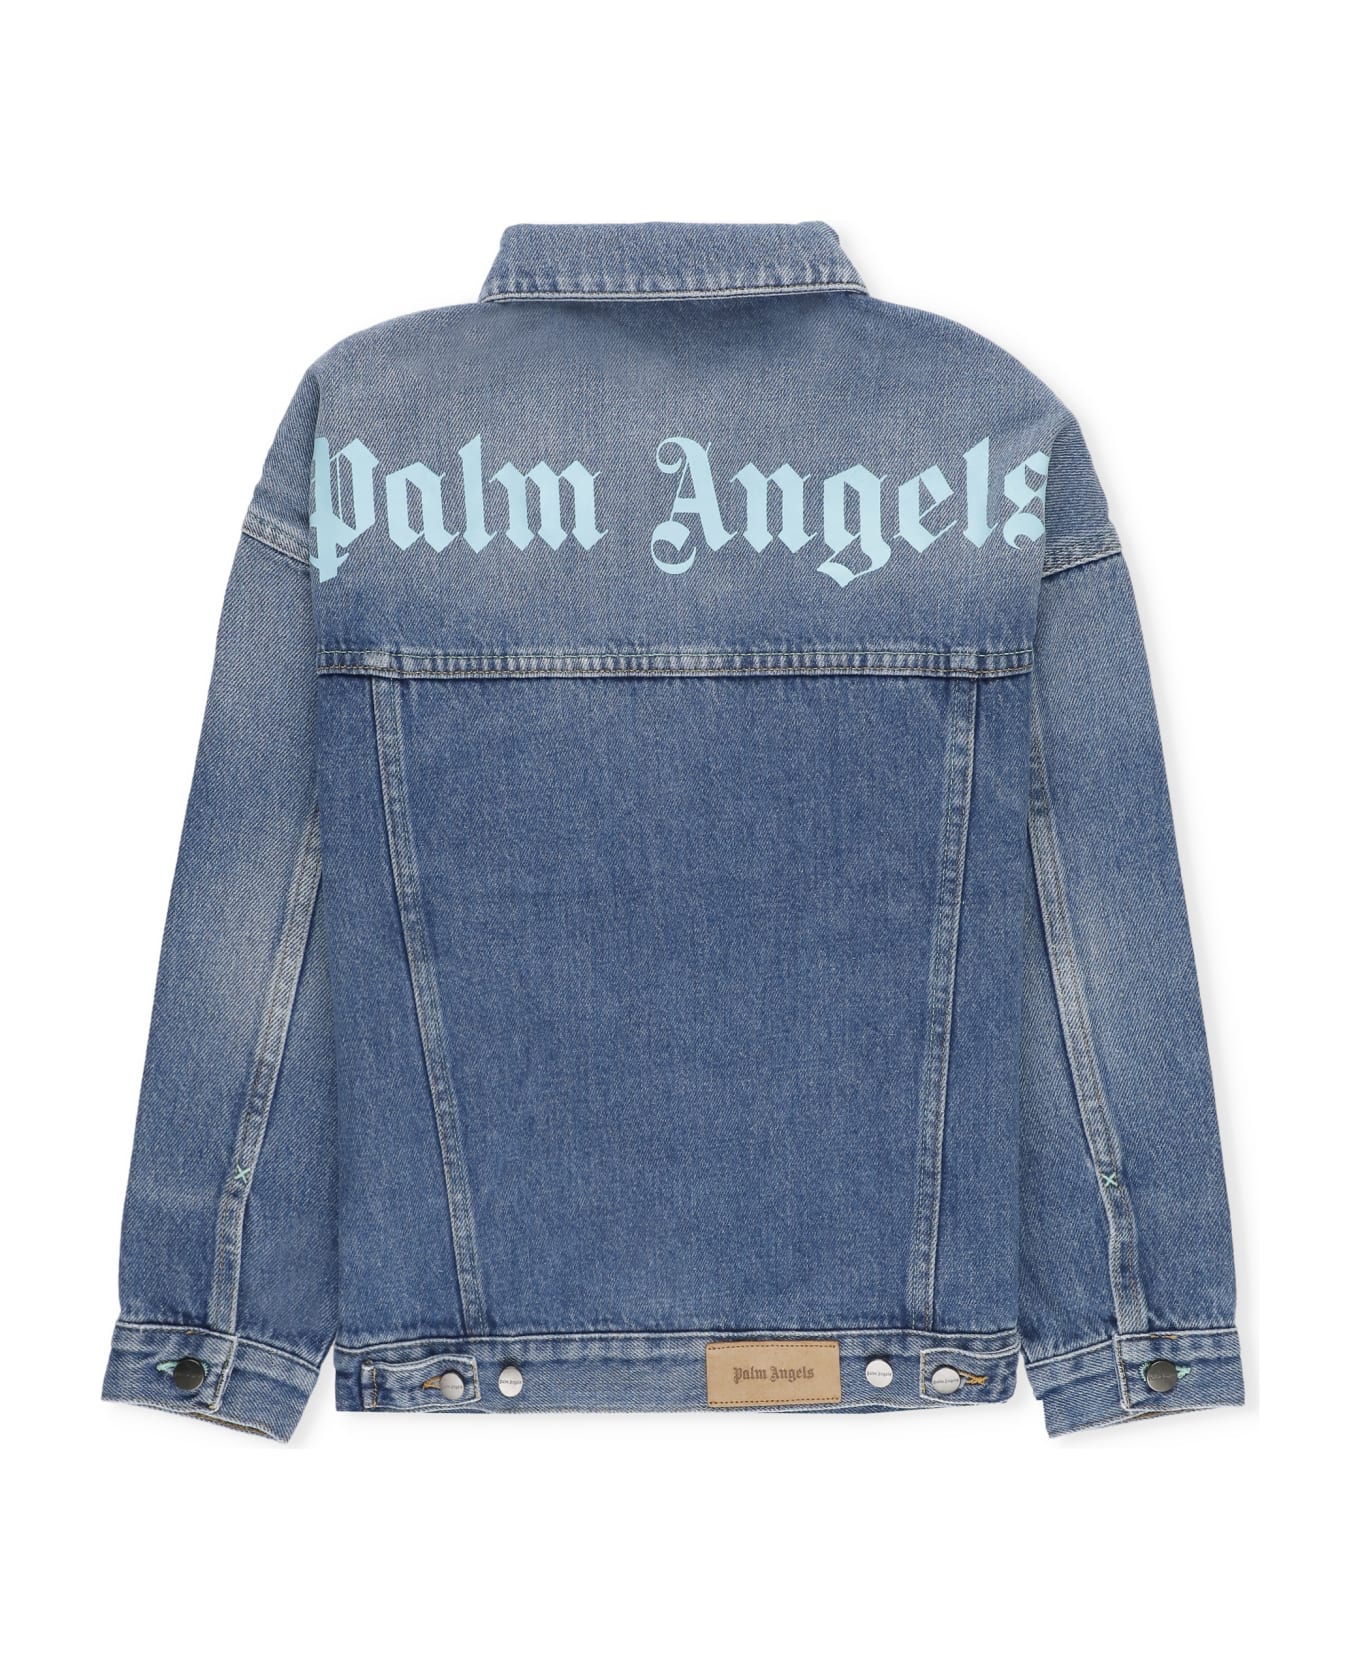 Palm Angels Overlogo Stone Jeans Jacket - Blue